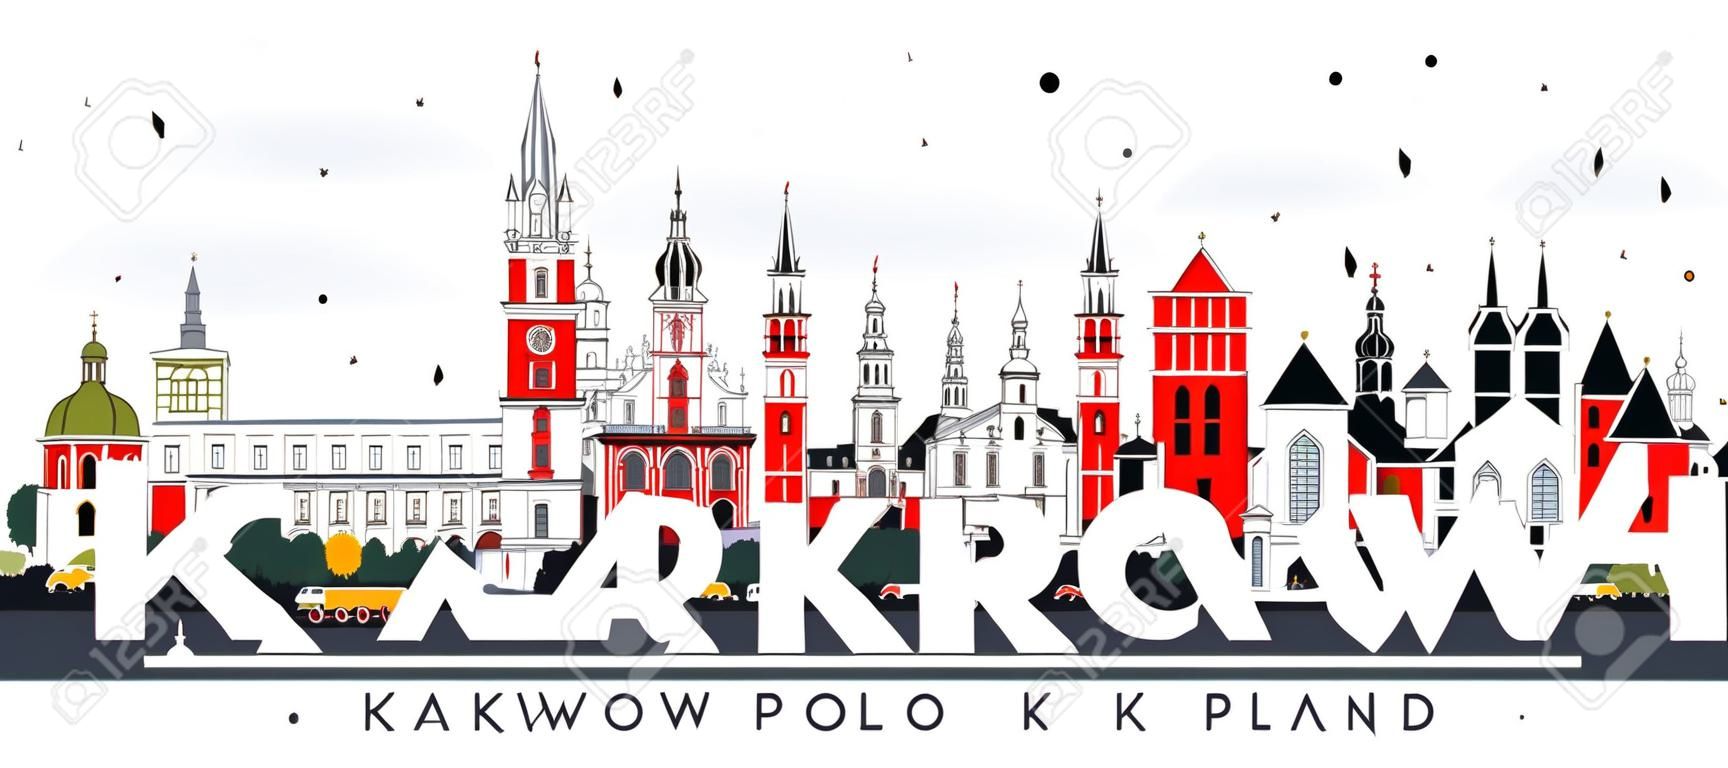 クラクフポーランドシティスカイラインと白に隔離された色の建物。ベクトルイラストレーション。歴史的建築とのビジネス旅行と観光コンセプト。ランドマークのあるクラクフの街並み。